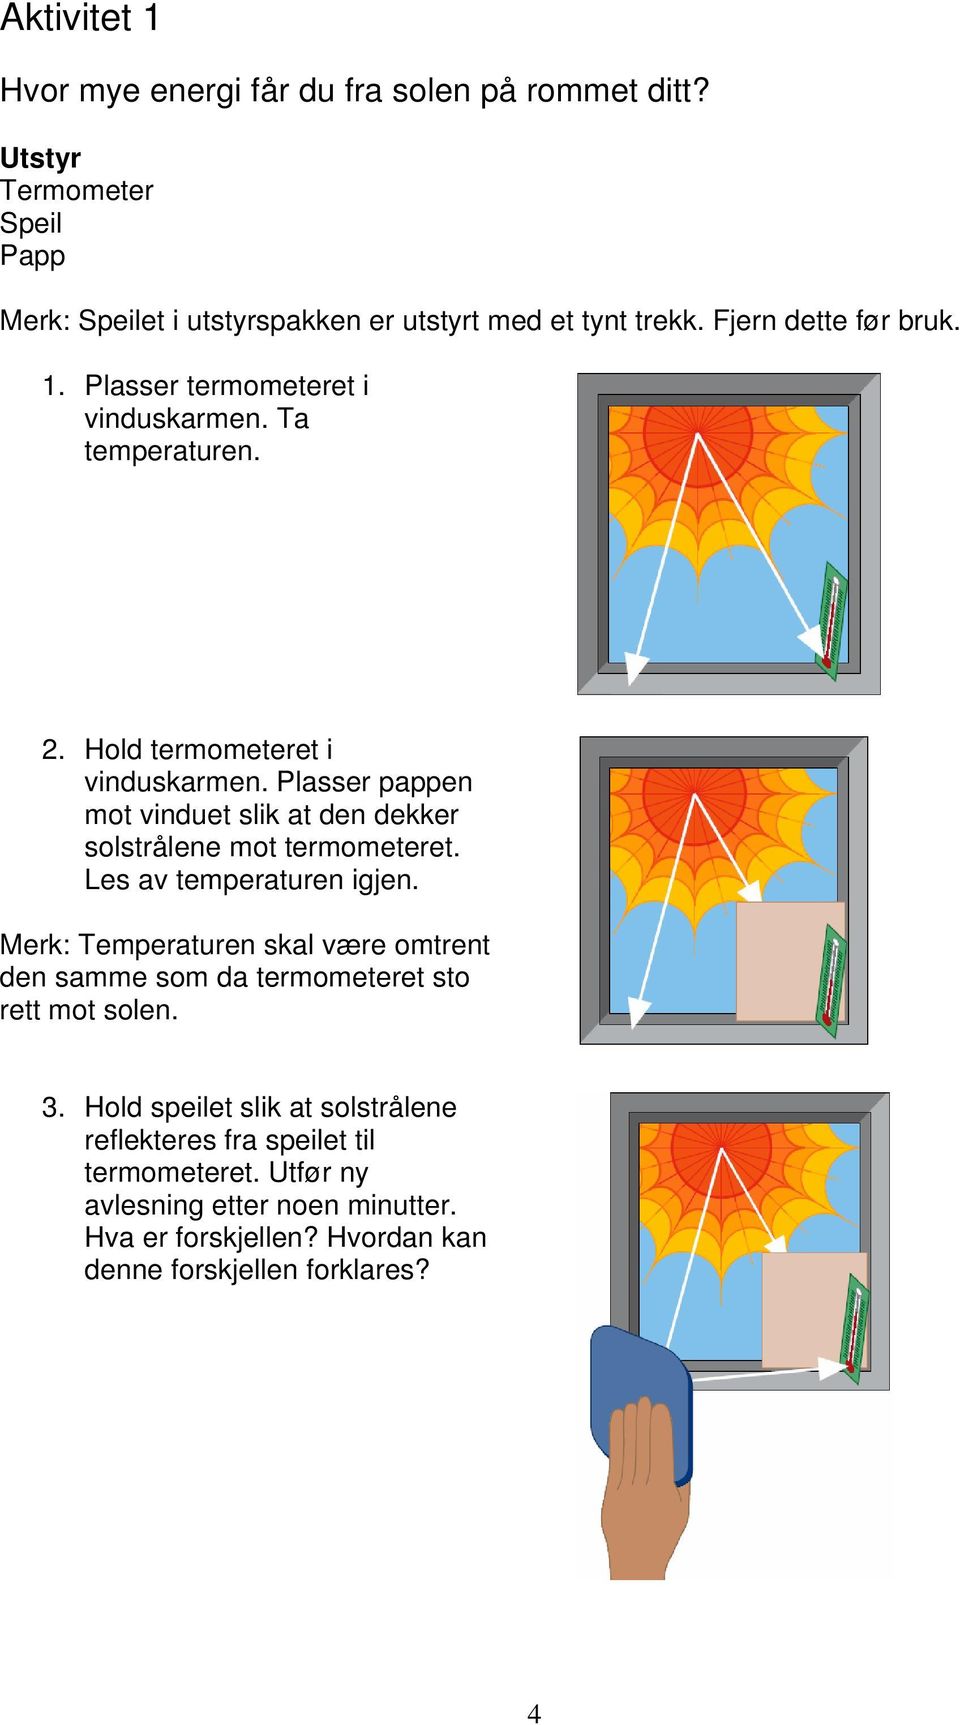 Plasser pappen mot vinduet slik at den dekker solstrålene mot termometeret. Les av temperaturen igjen.